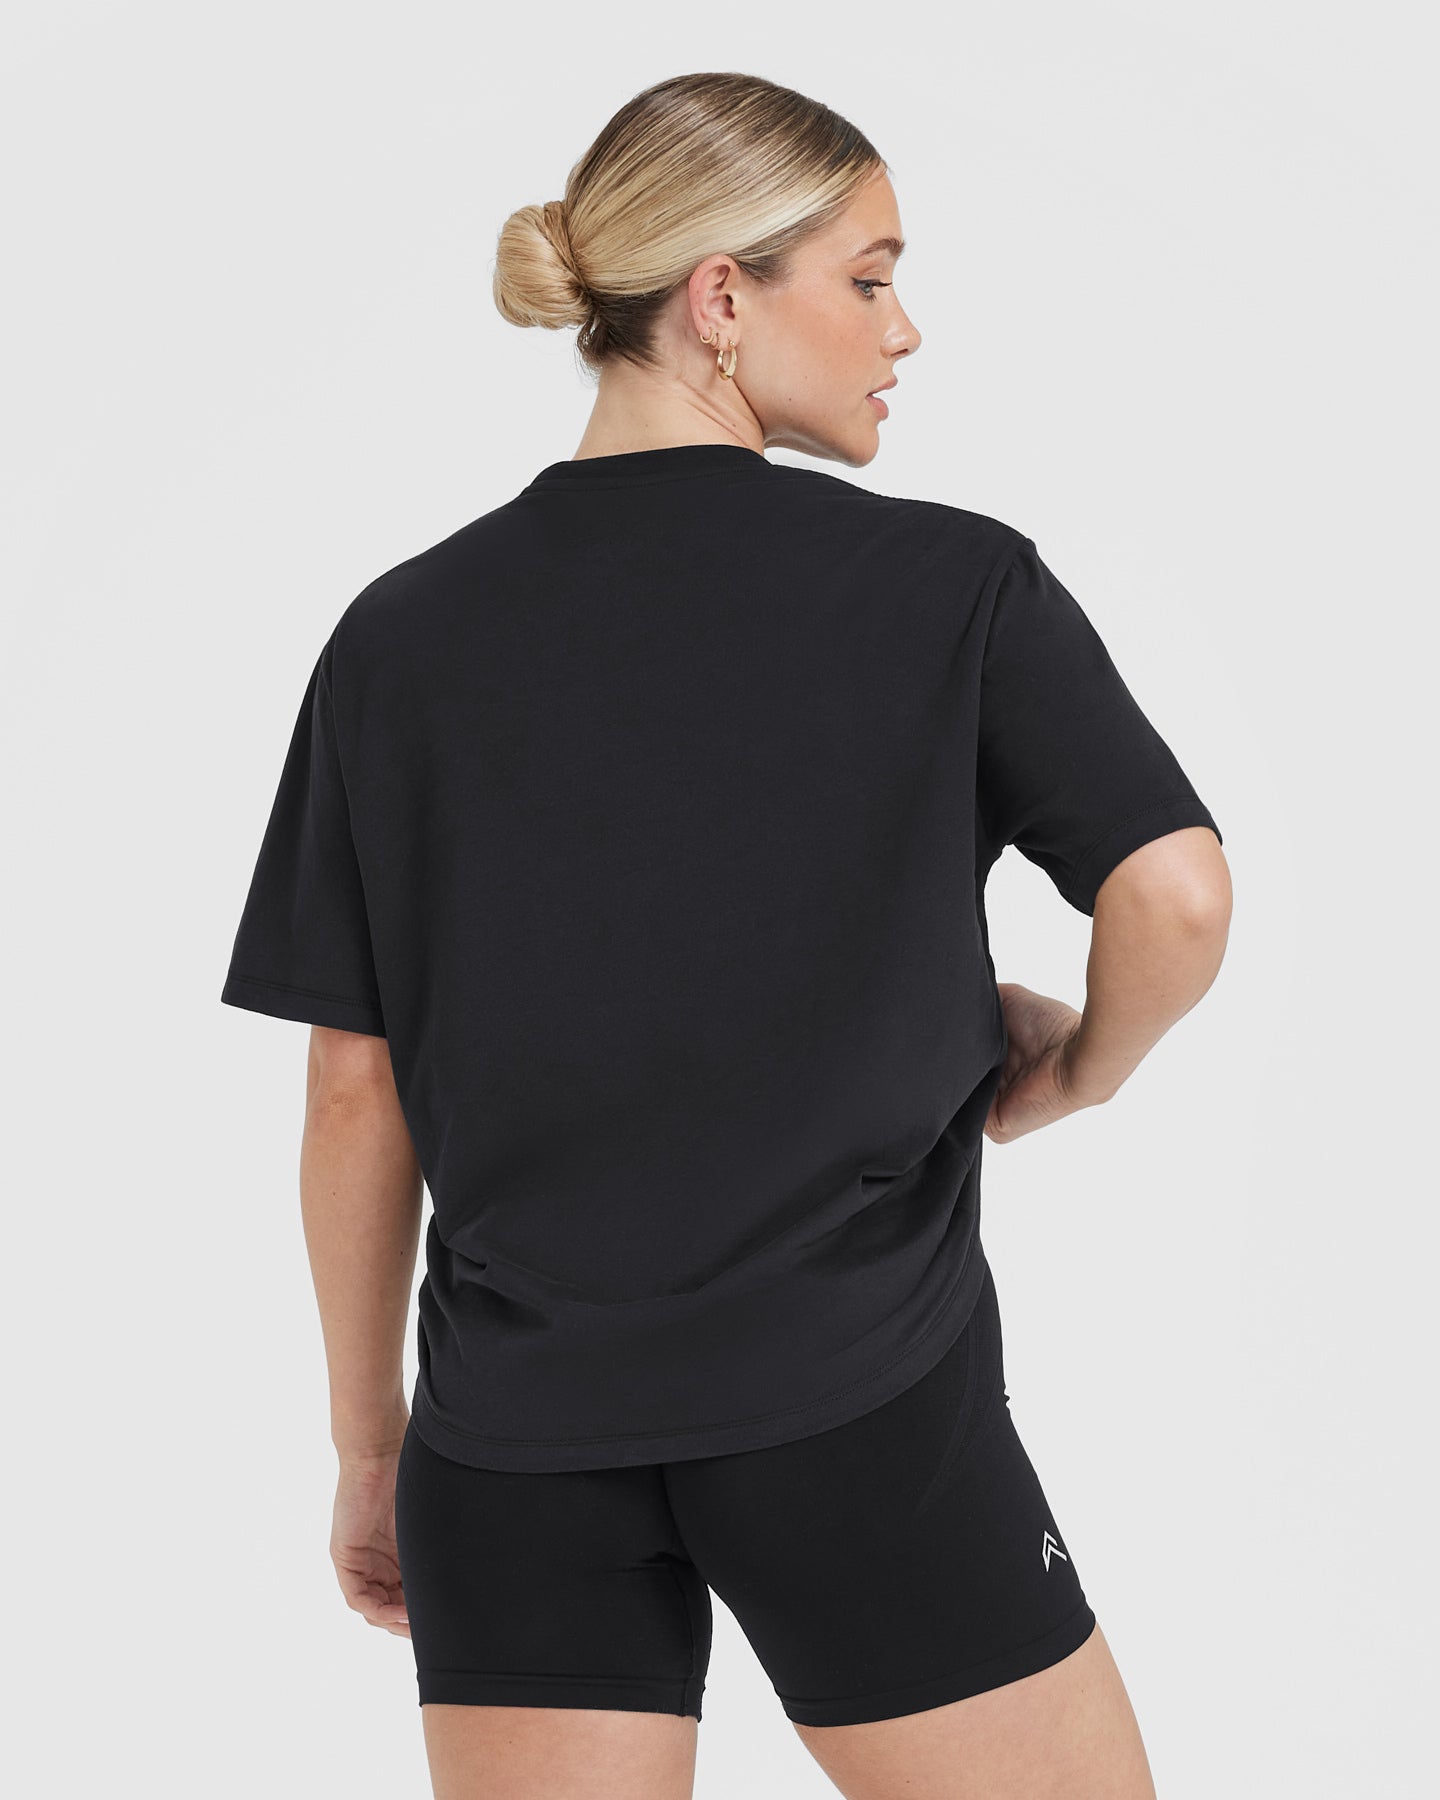 Oversized Black T-Shirt Women's - Lightweight